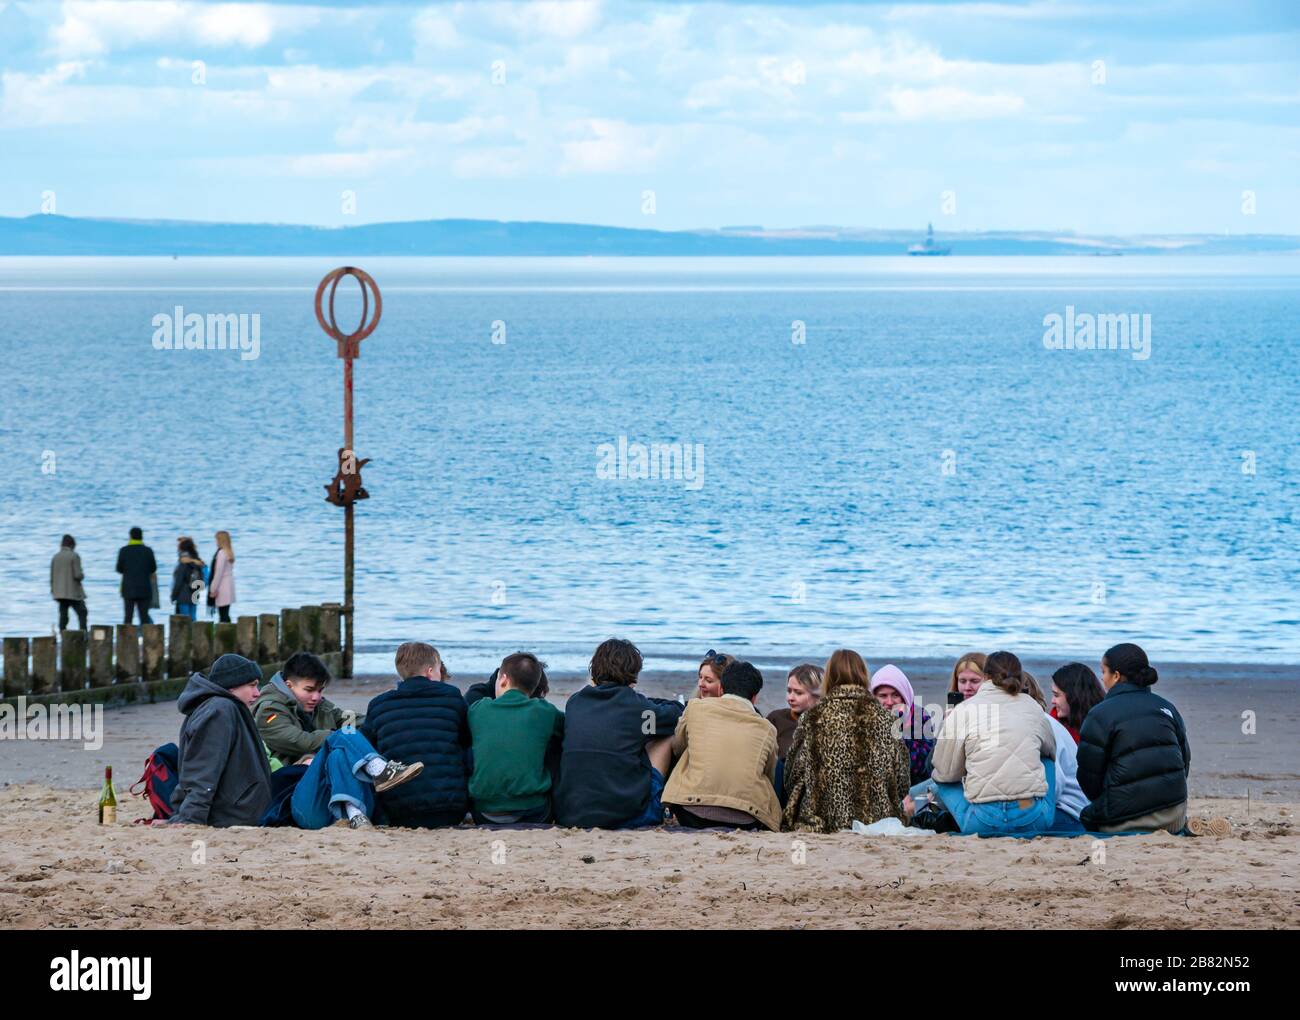 Portobello Beach, Edimburgo, Scozia, Regno Unito. 19 marzo 2020. In una soleggiata giornata primaverile, le persone si divertono al mare. Un gruppo di giovani si riuniscono per fare festa sulla spiaggia nonostante i consigli per mantenere la distanza sociale durante la pandemia di Coronavirus Covid-19 Foto Stock